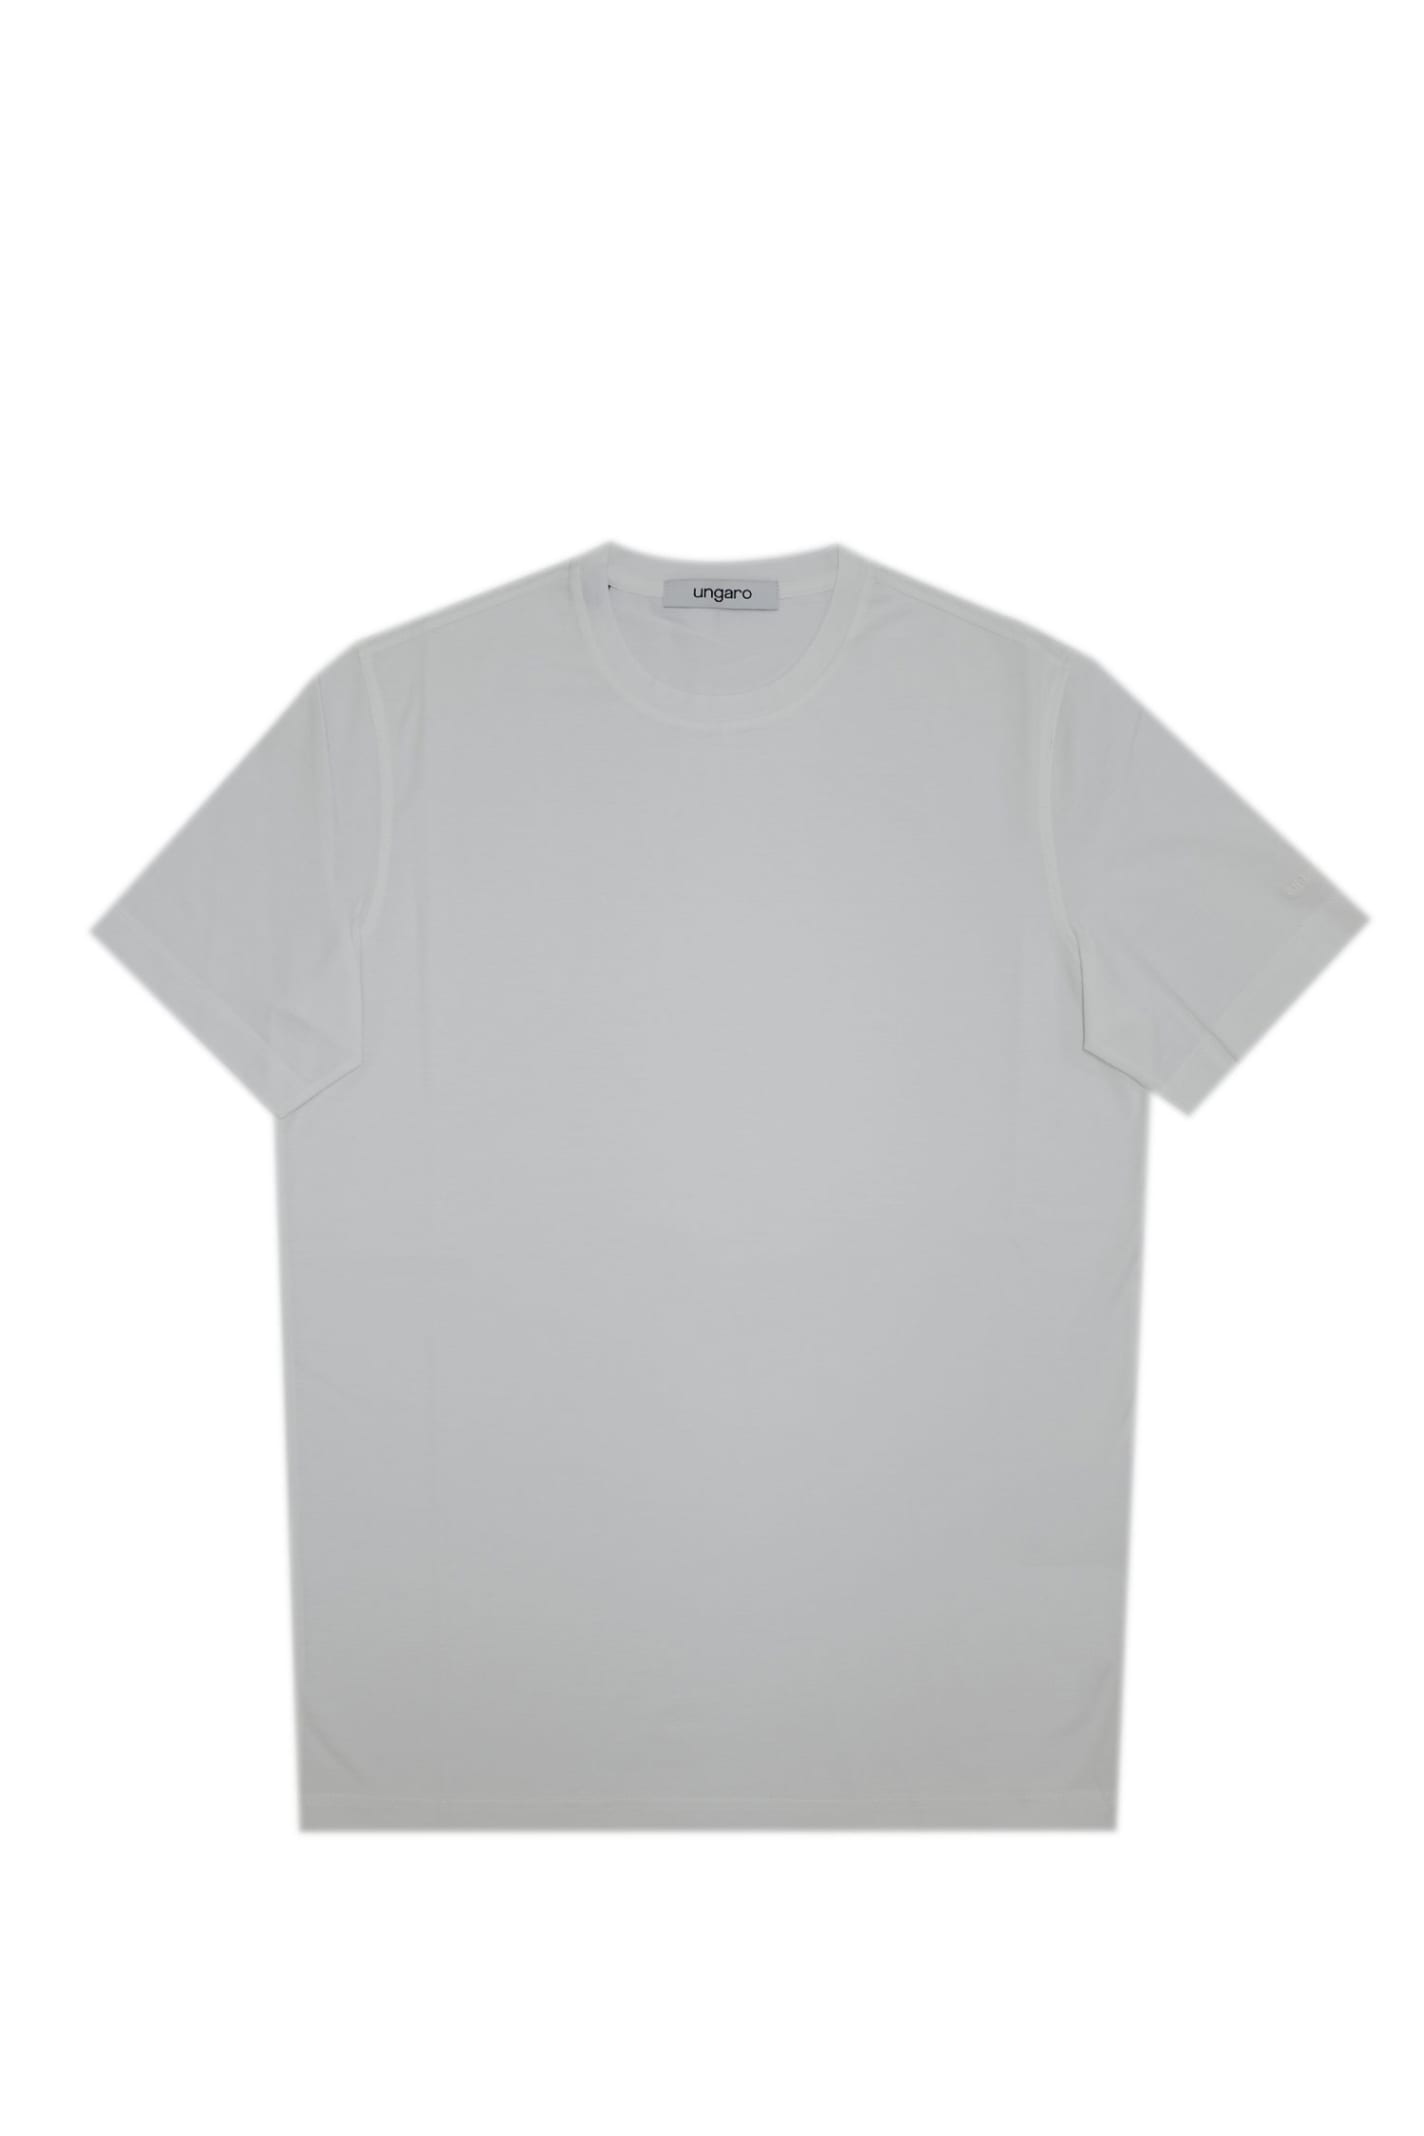 Emanuel Ungaro T-shirt In White